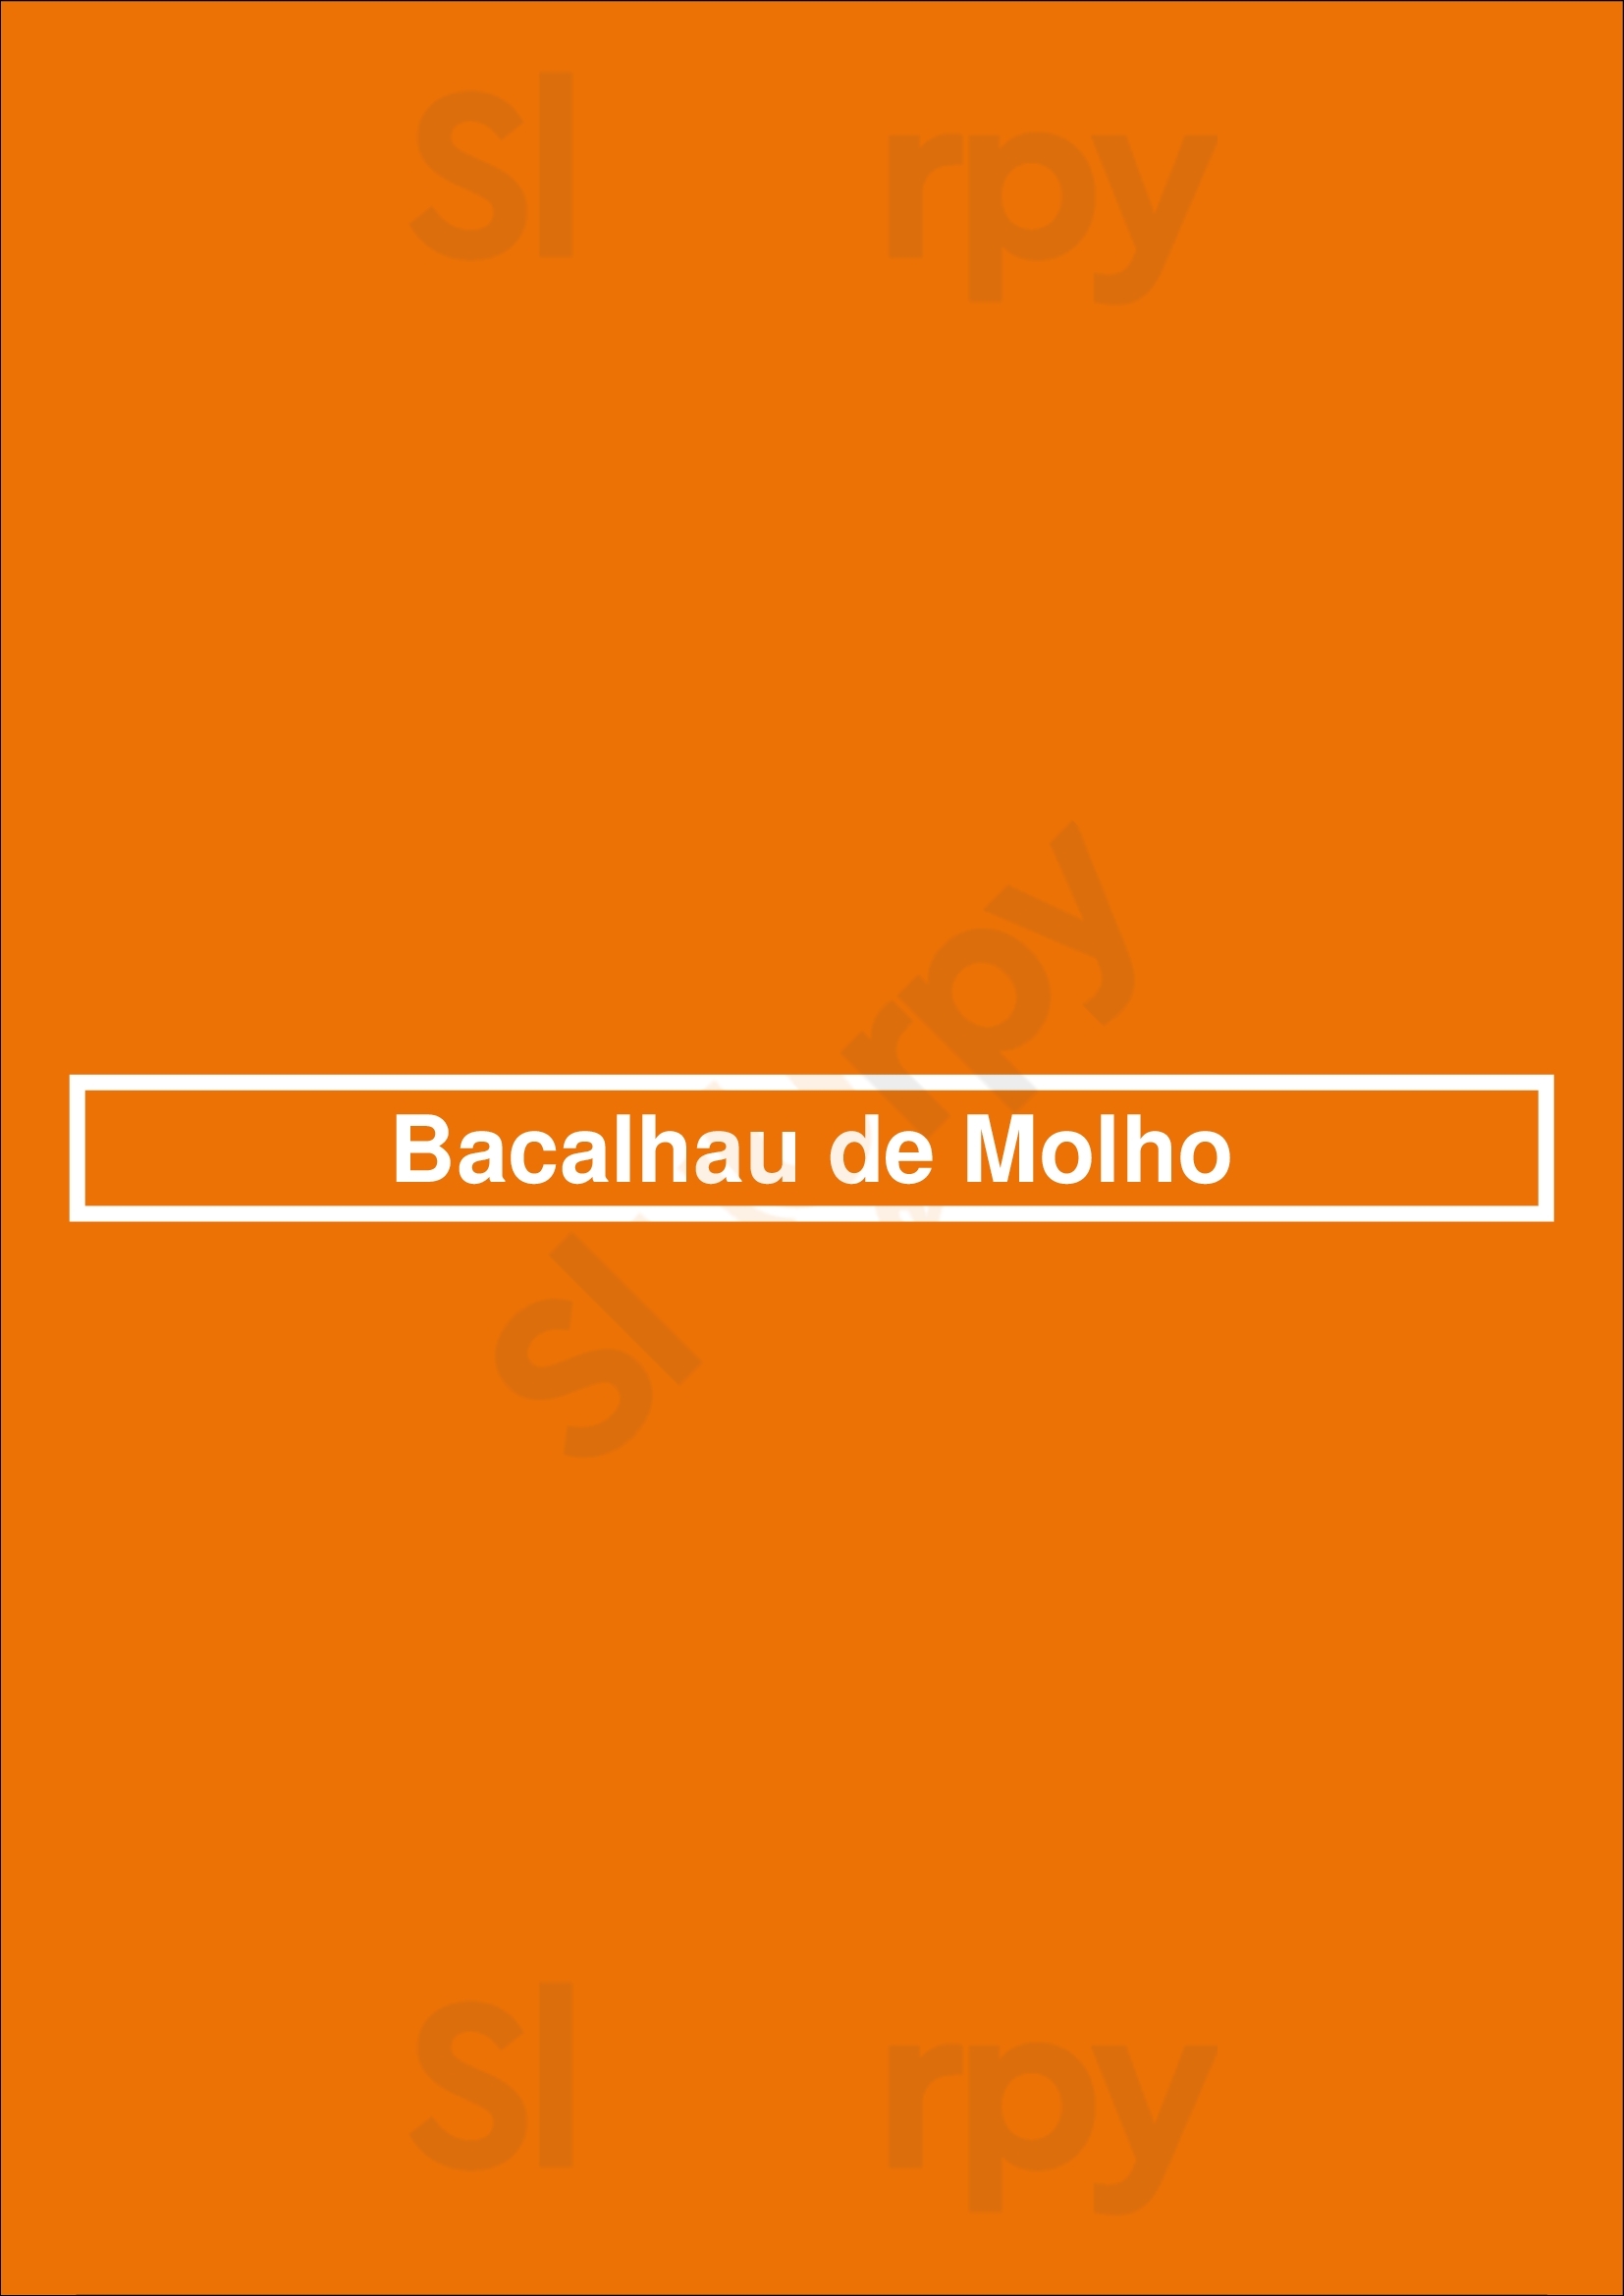 Bacalhau De Molho Lisboa Menu - 1